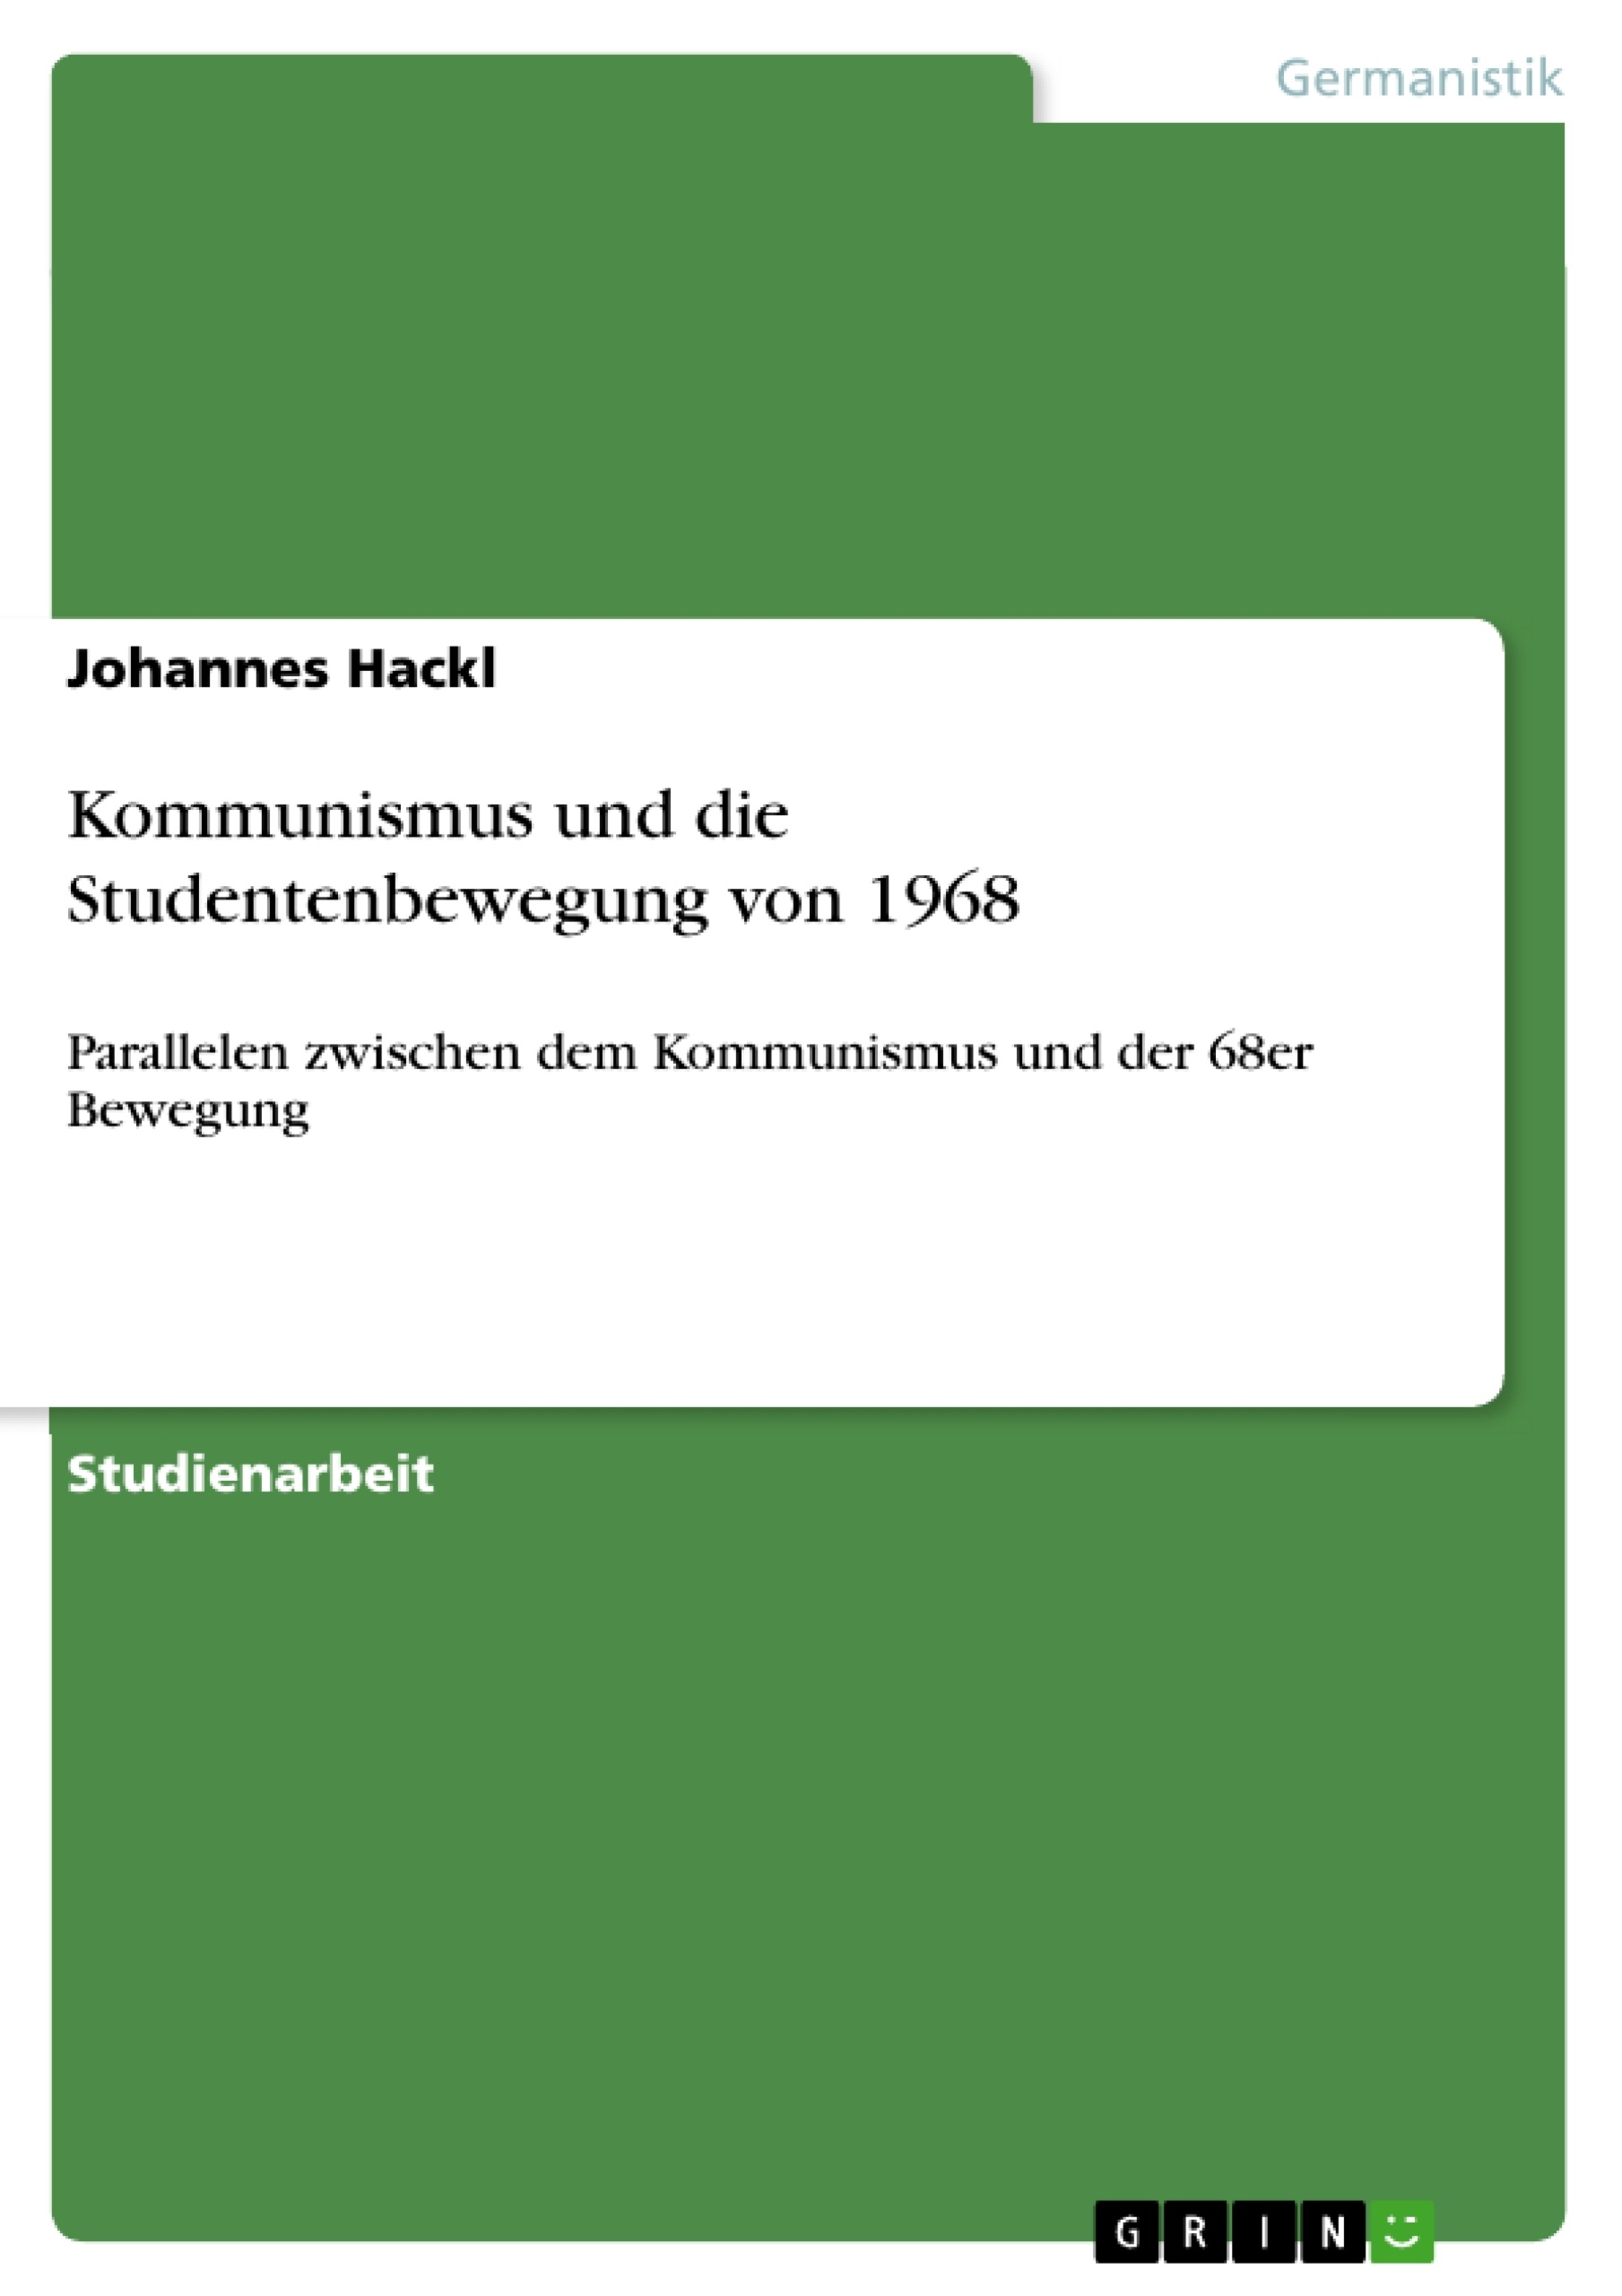 Title: Kommunismus und die Studentenbewegung von 1968